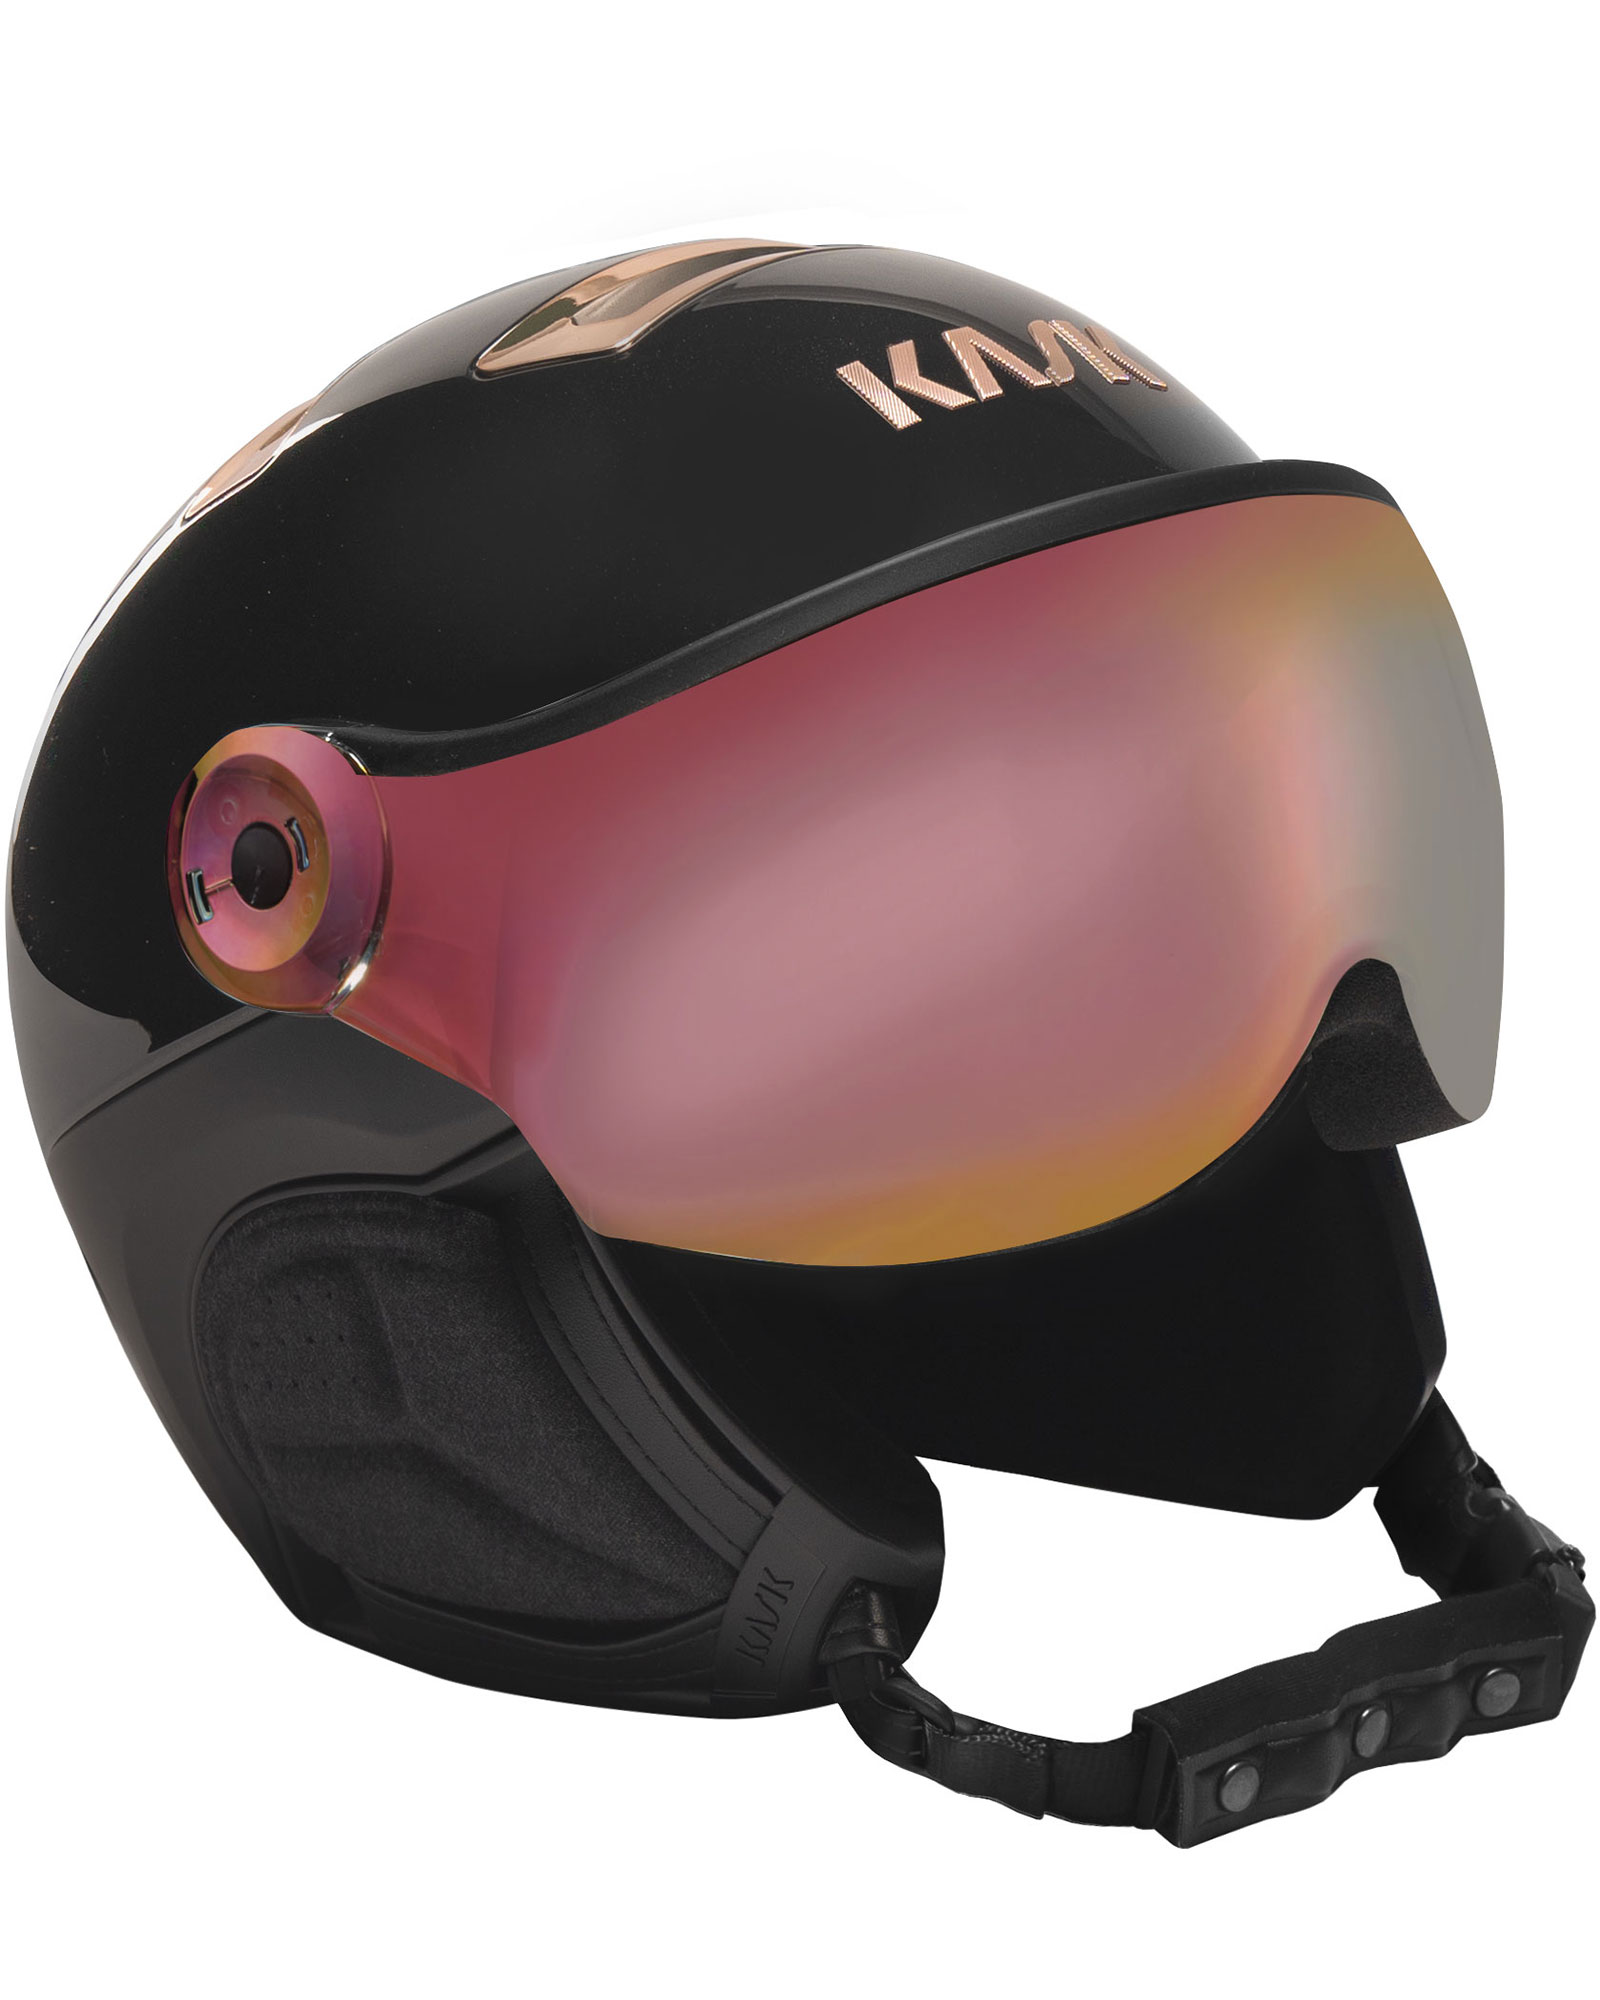 KASK Chrome Visor Helmet - Black/Pink Gold - Pink Gold Mirror Visor S